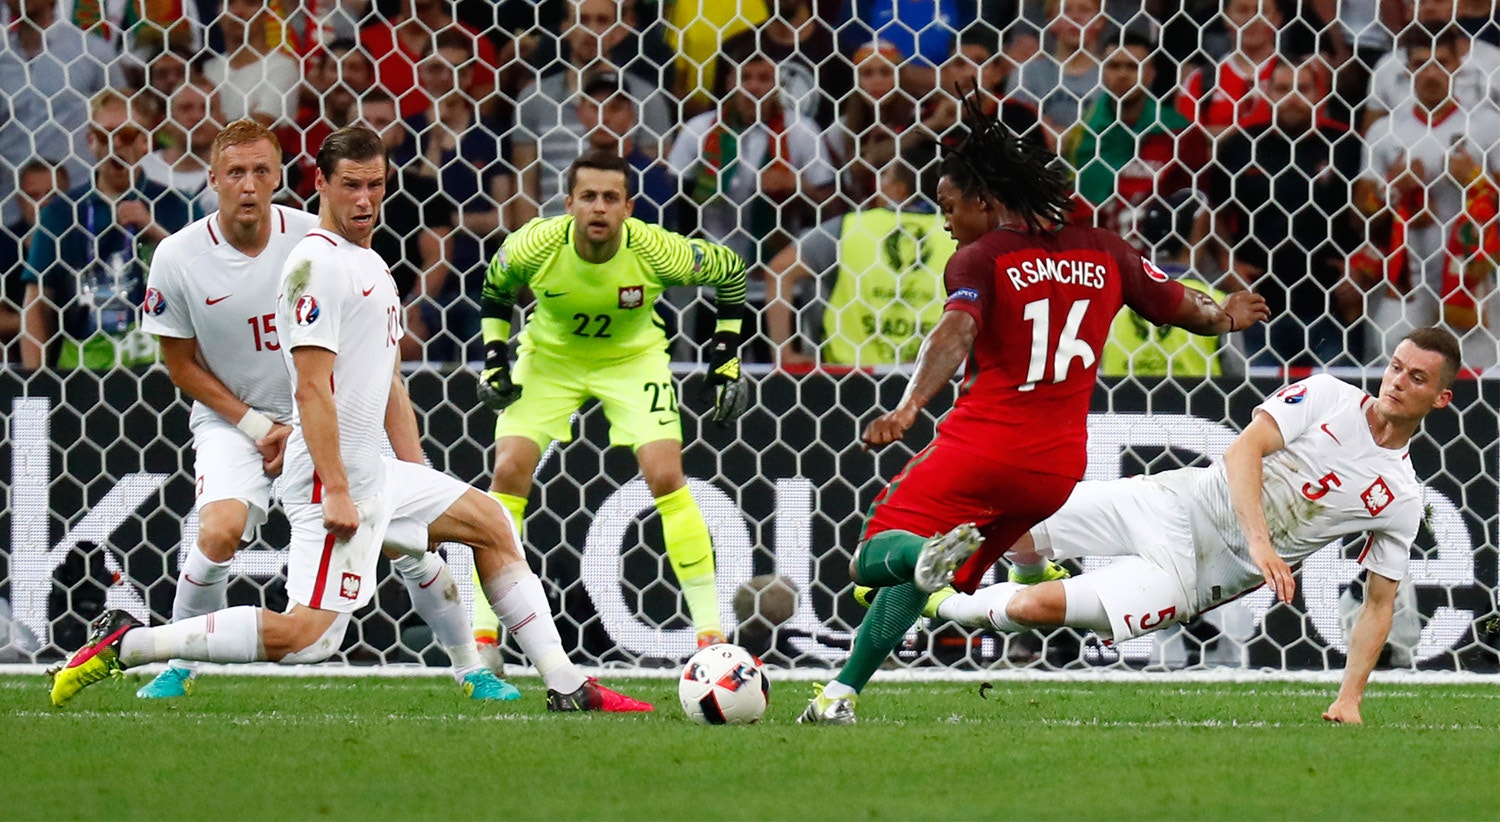  O primeiro golo pela sele&ccedil;&atilde;o foi apontado &agrave; Pol&oacute;nia. &Eacute; o golo que vale o empate a Portugal e que leva o jogo at&eacute; &agrave;s grandes penalidades. 